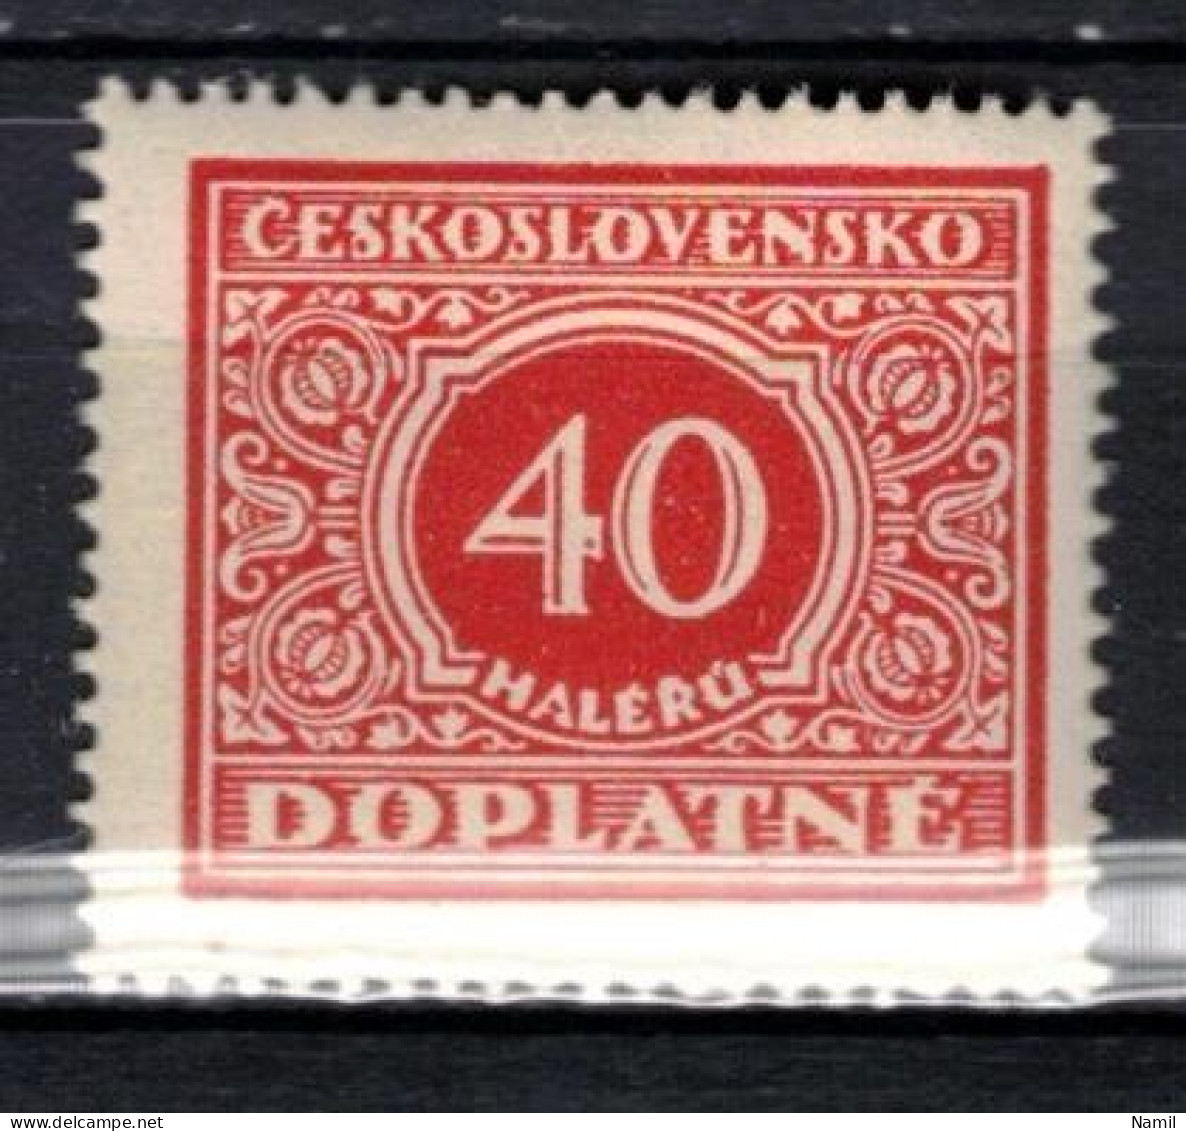 ** Tchécoslovaquie 1928 Mi P 59 (Yv TT 55), (MNH)** Varieté Position 69 - Variétés Et Curiosités